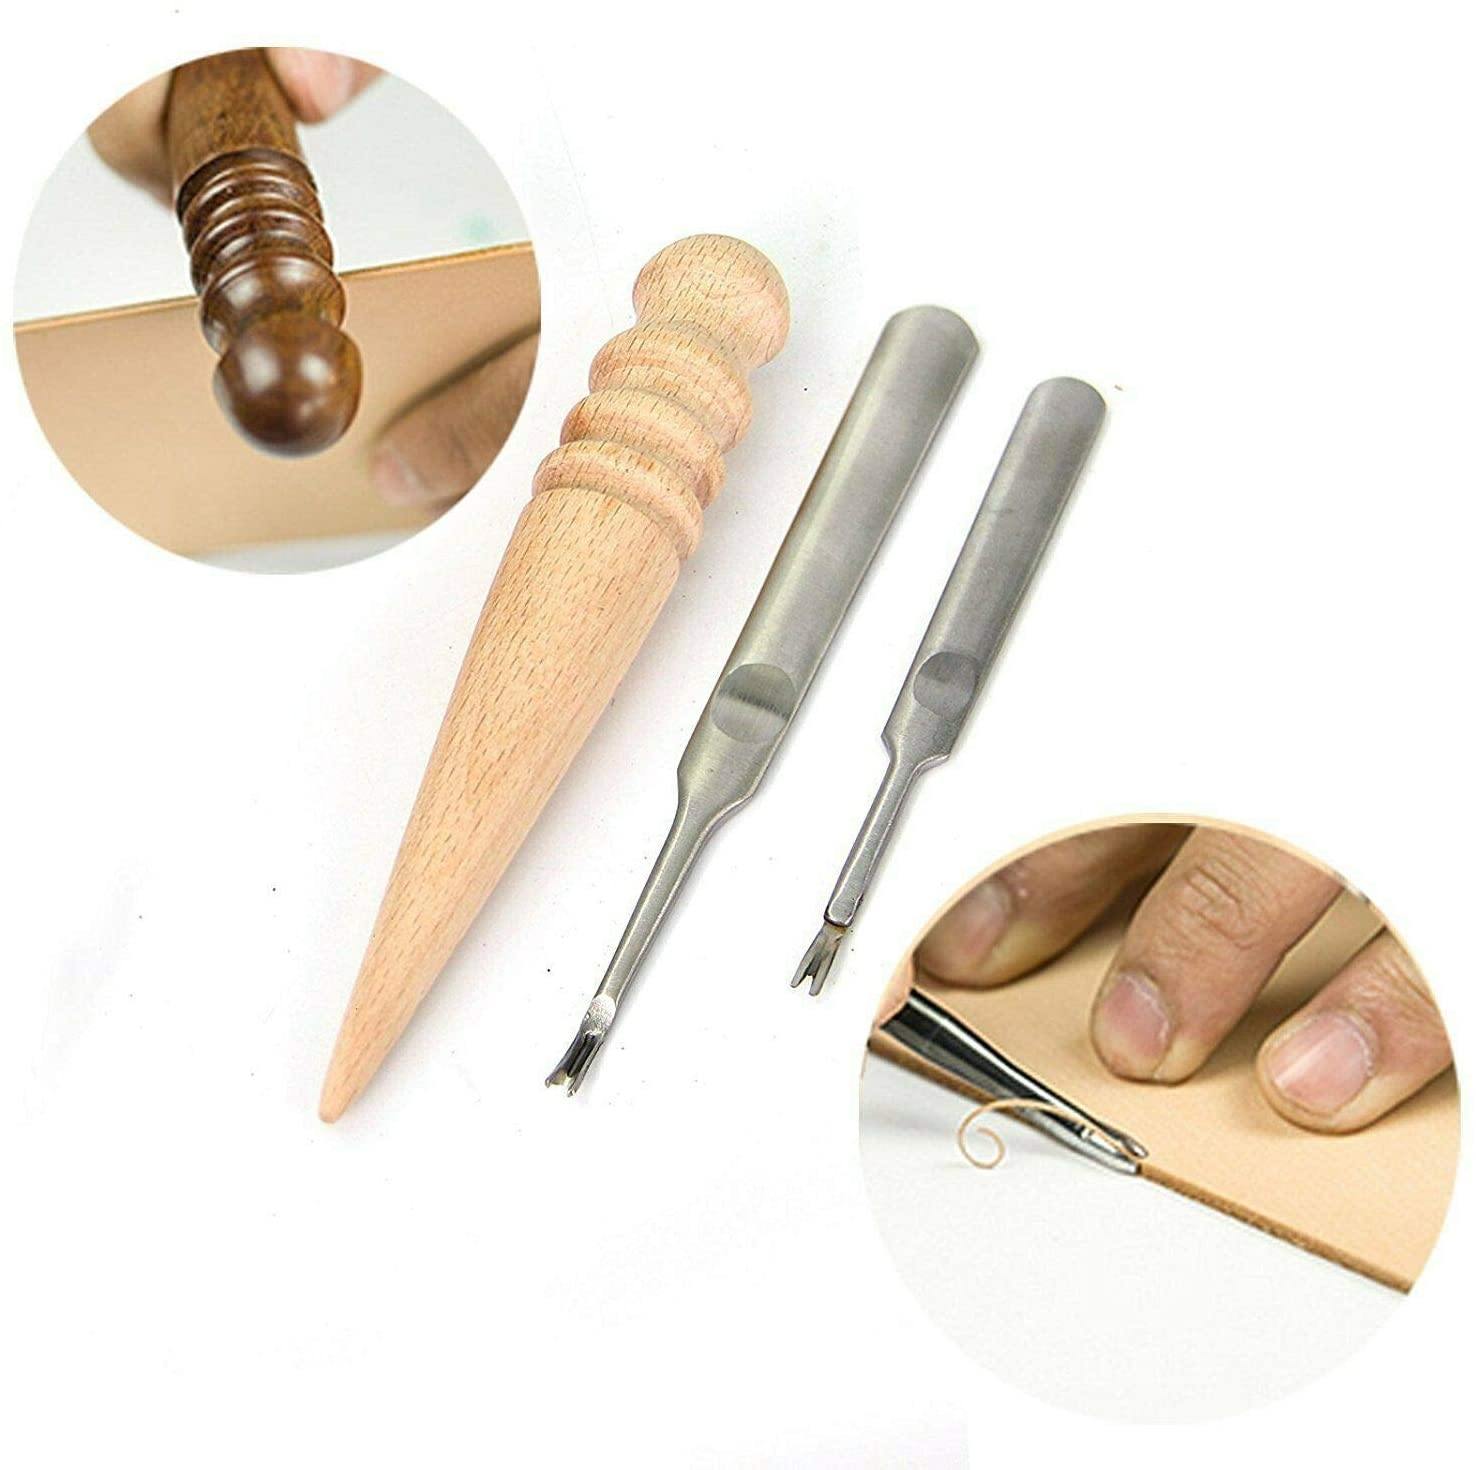 Leather Craft Tools Kits, Leather Craft Tools Set